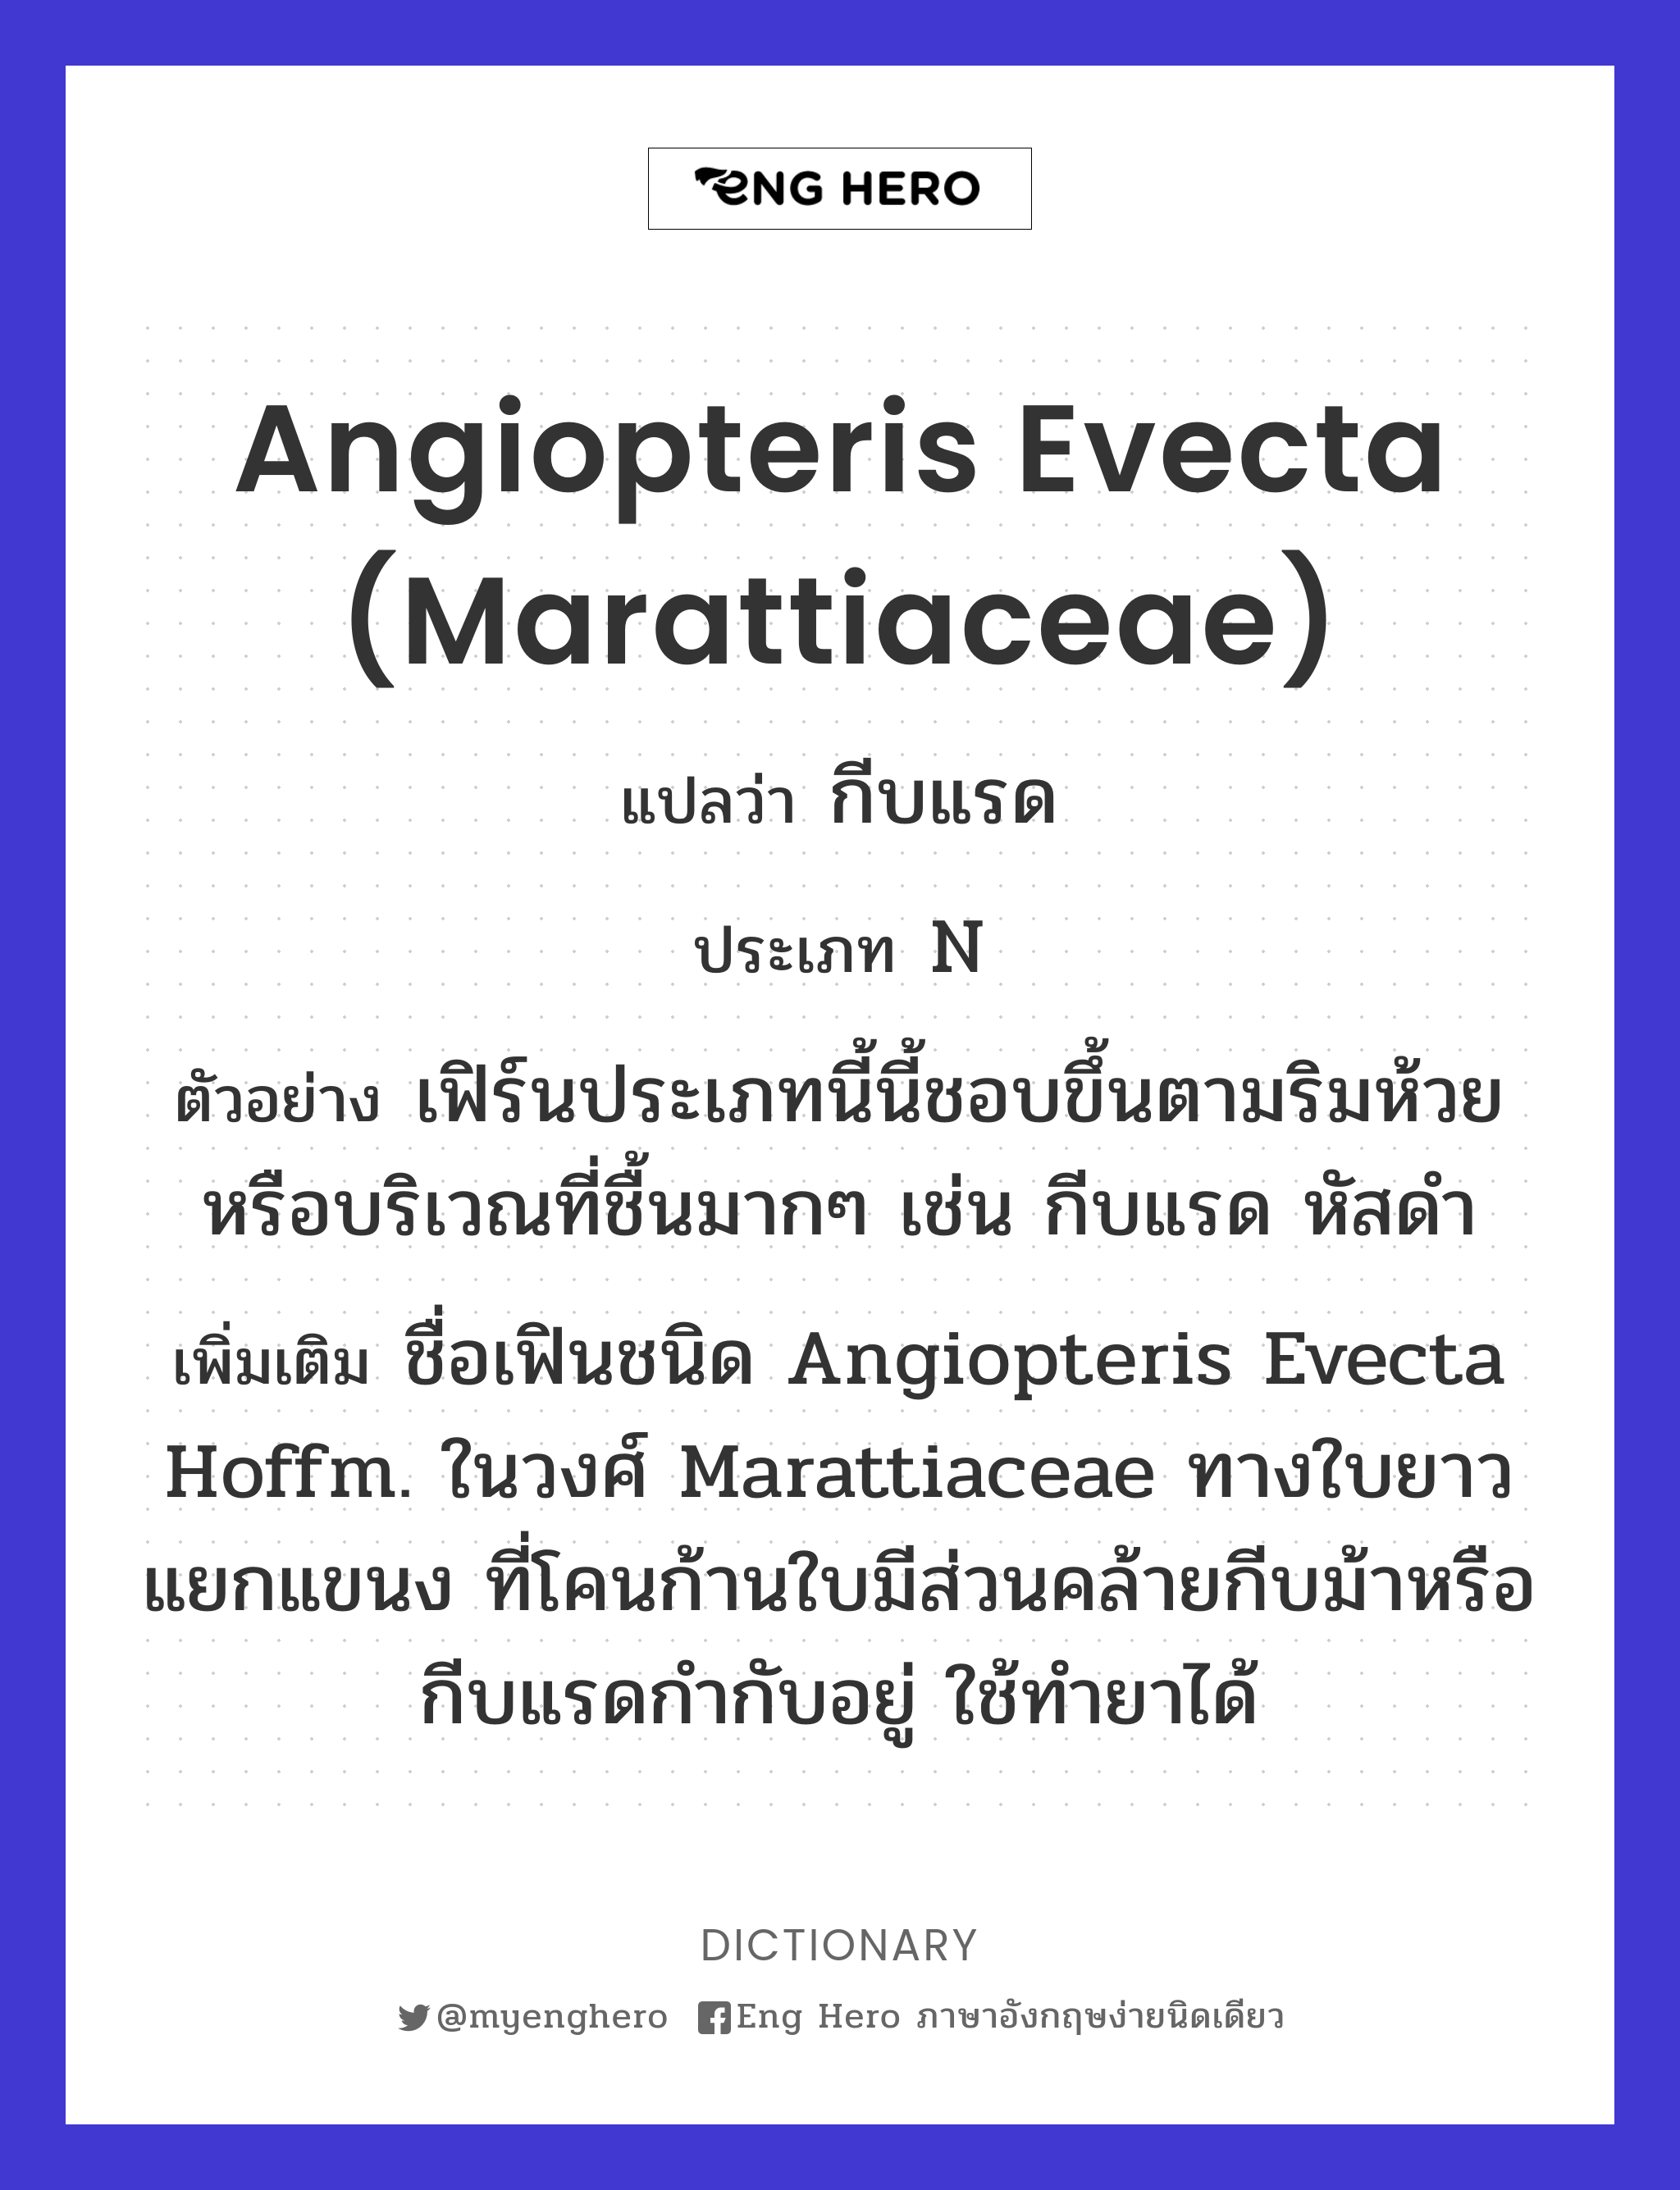 Angiopteris evecta (Marattiaceae)